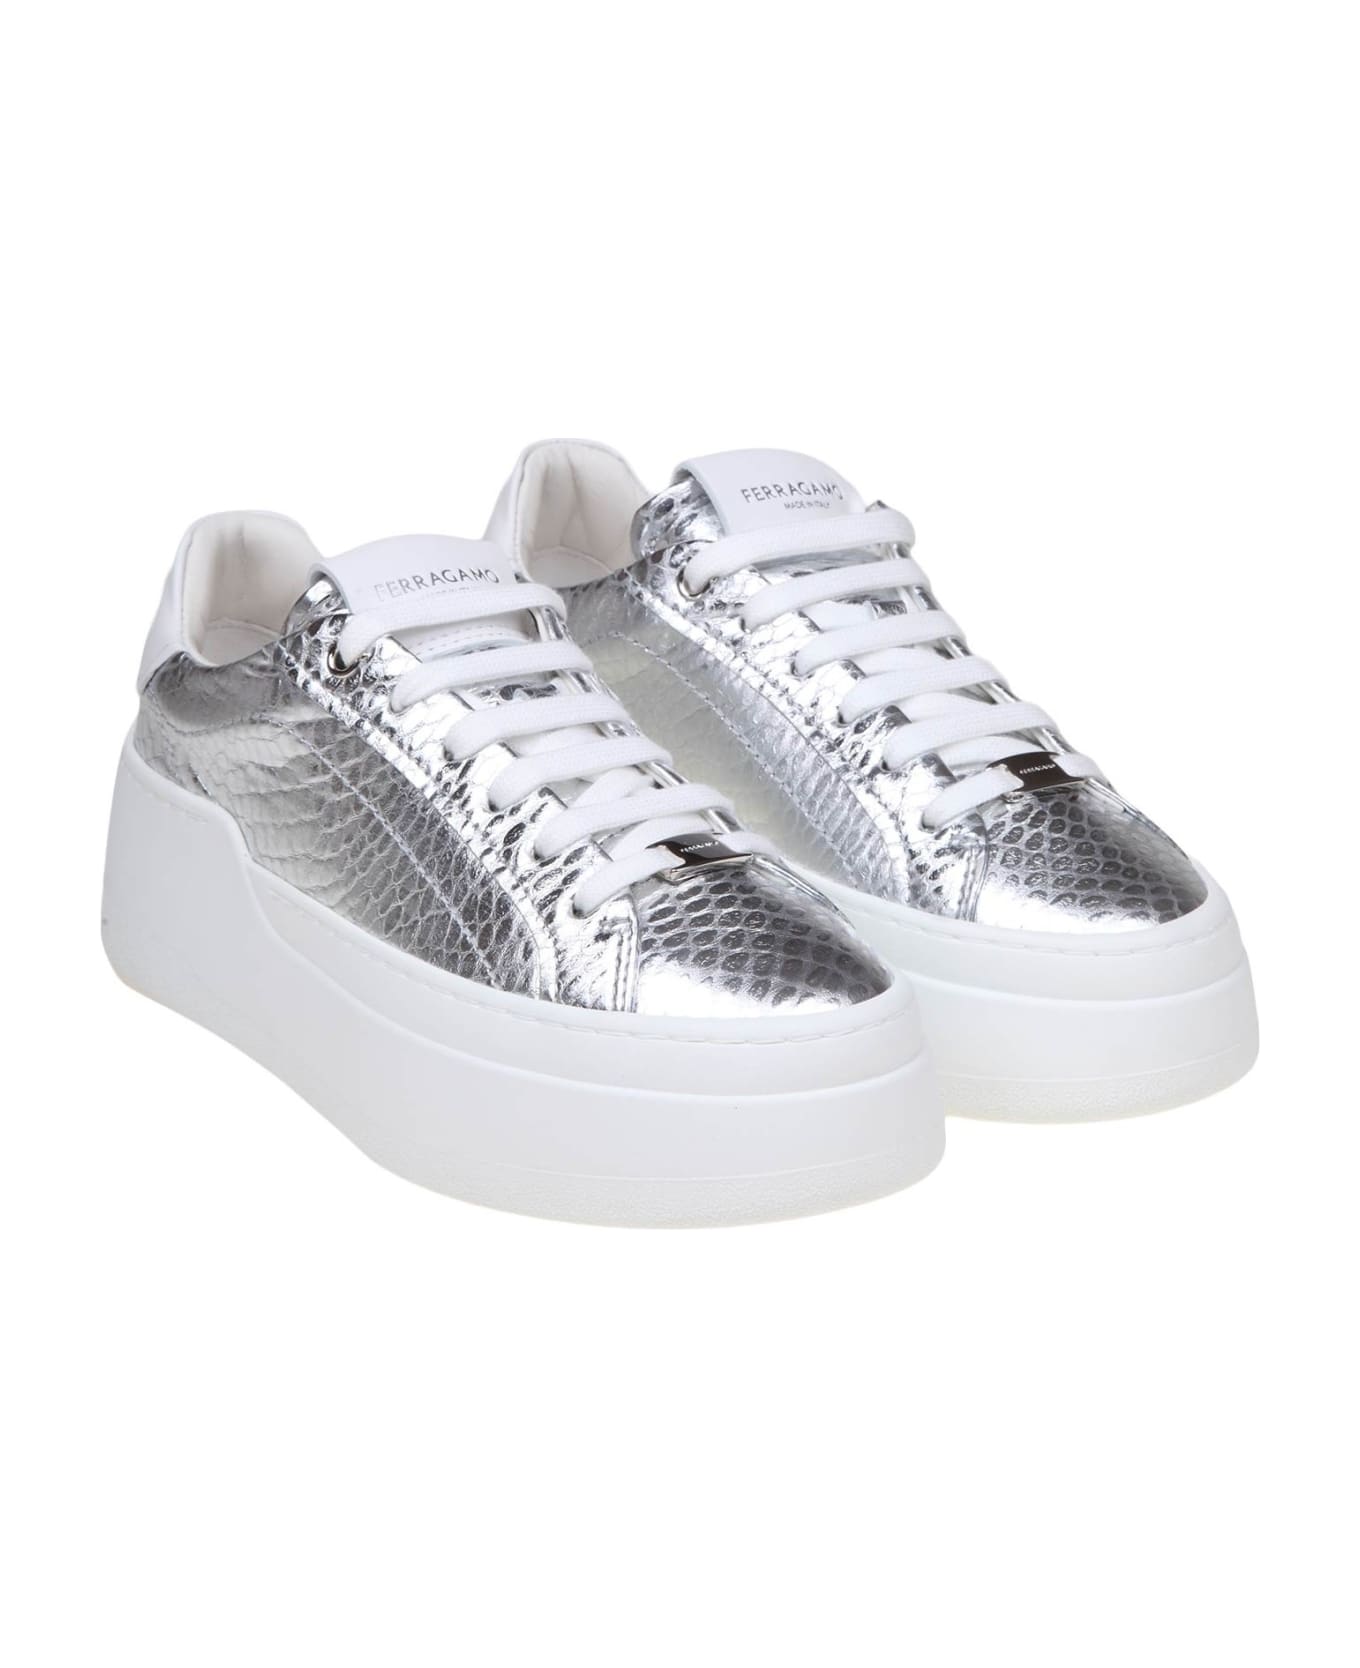 Ferragamo Sneakers Dahlia In Pelle Colore Argento - Silver ウェッジシューズ